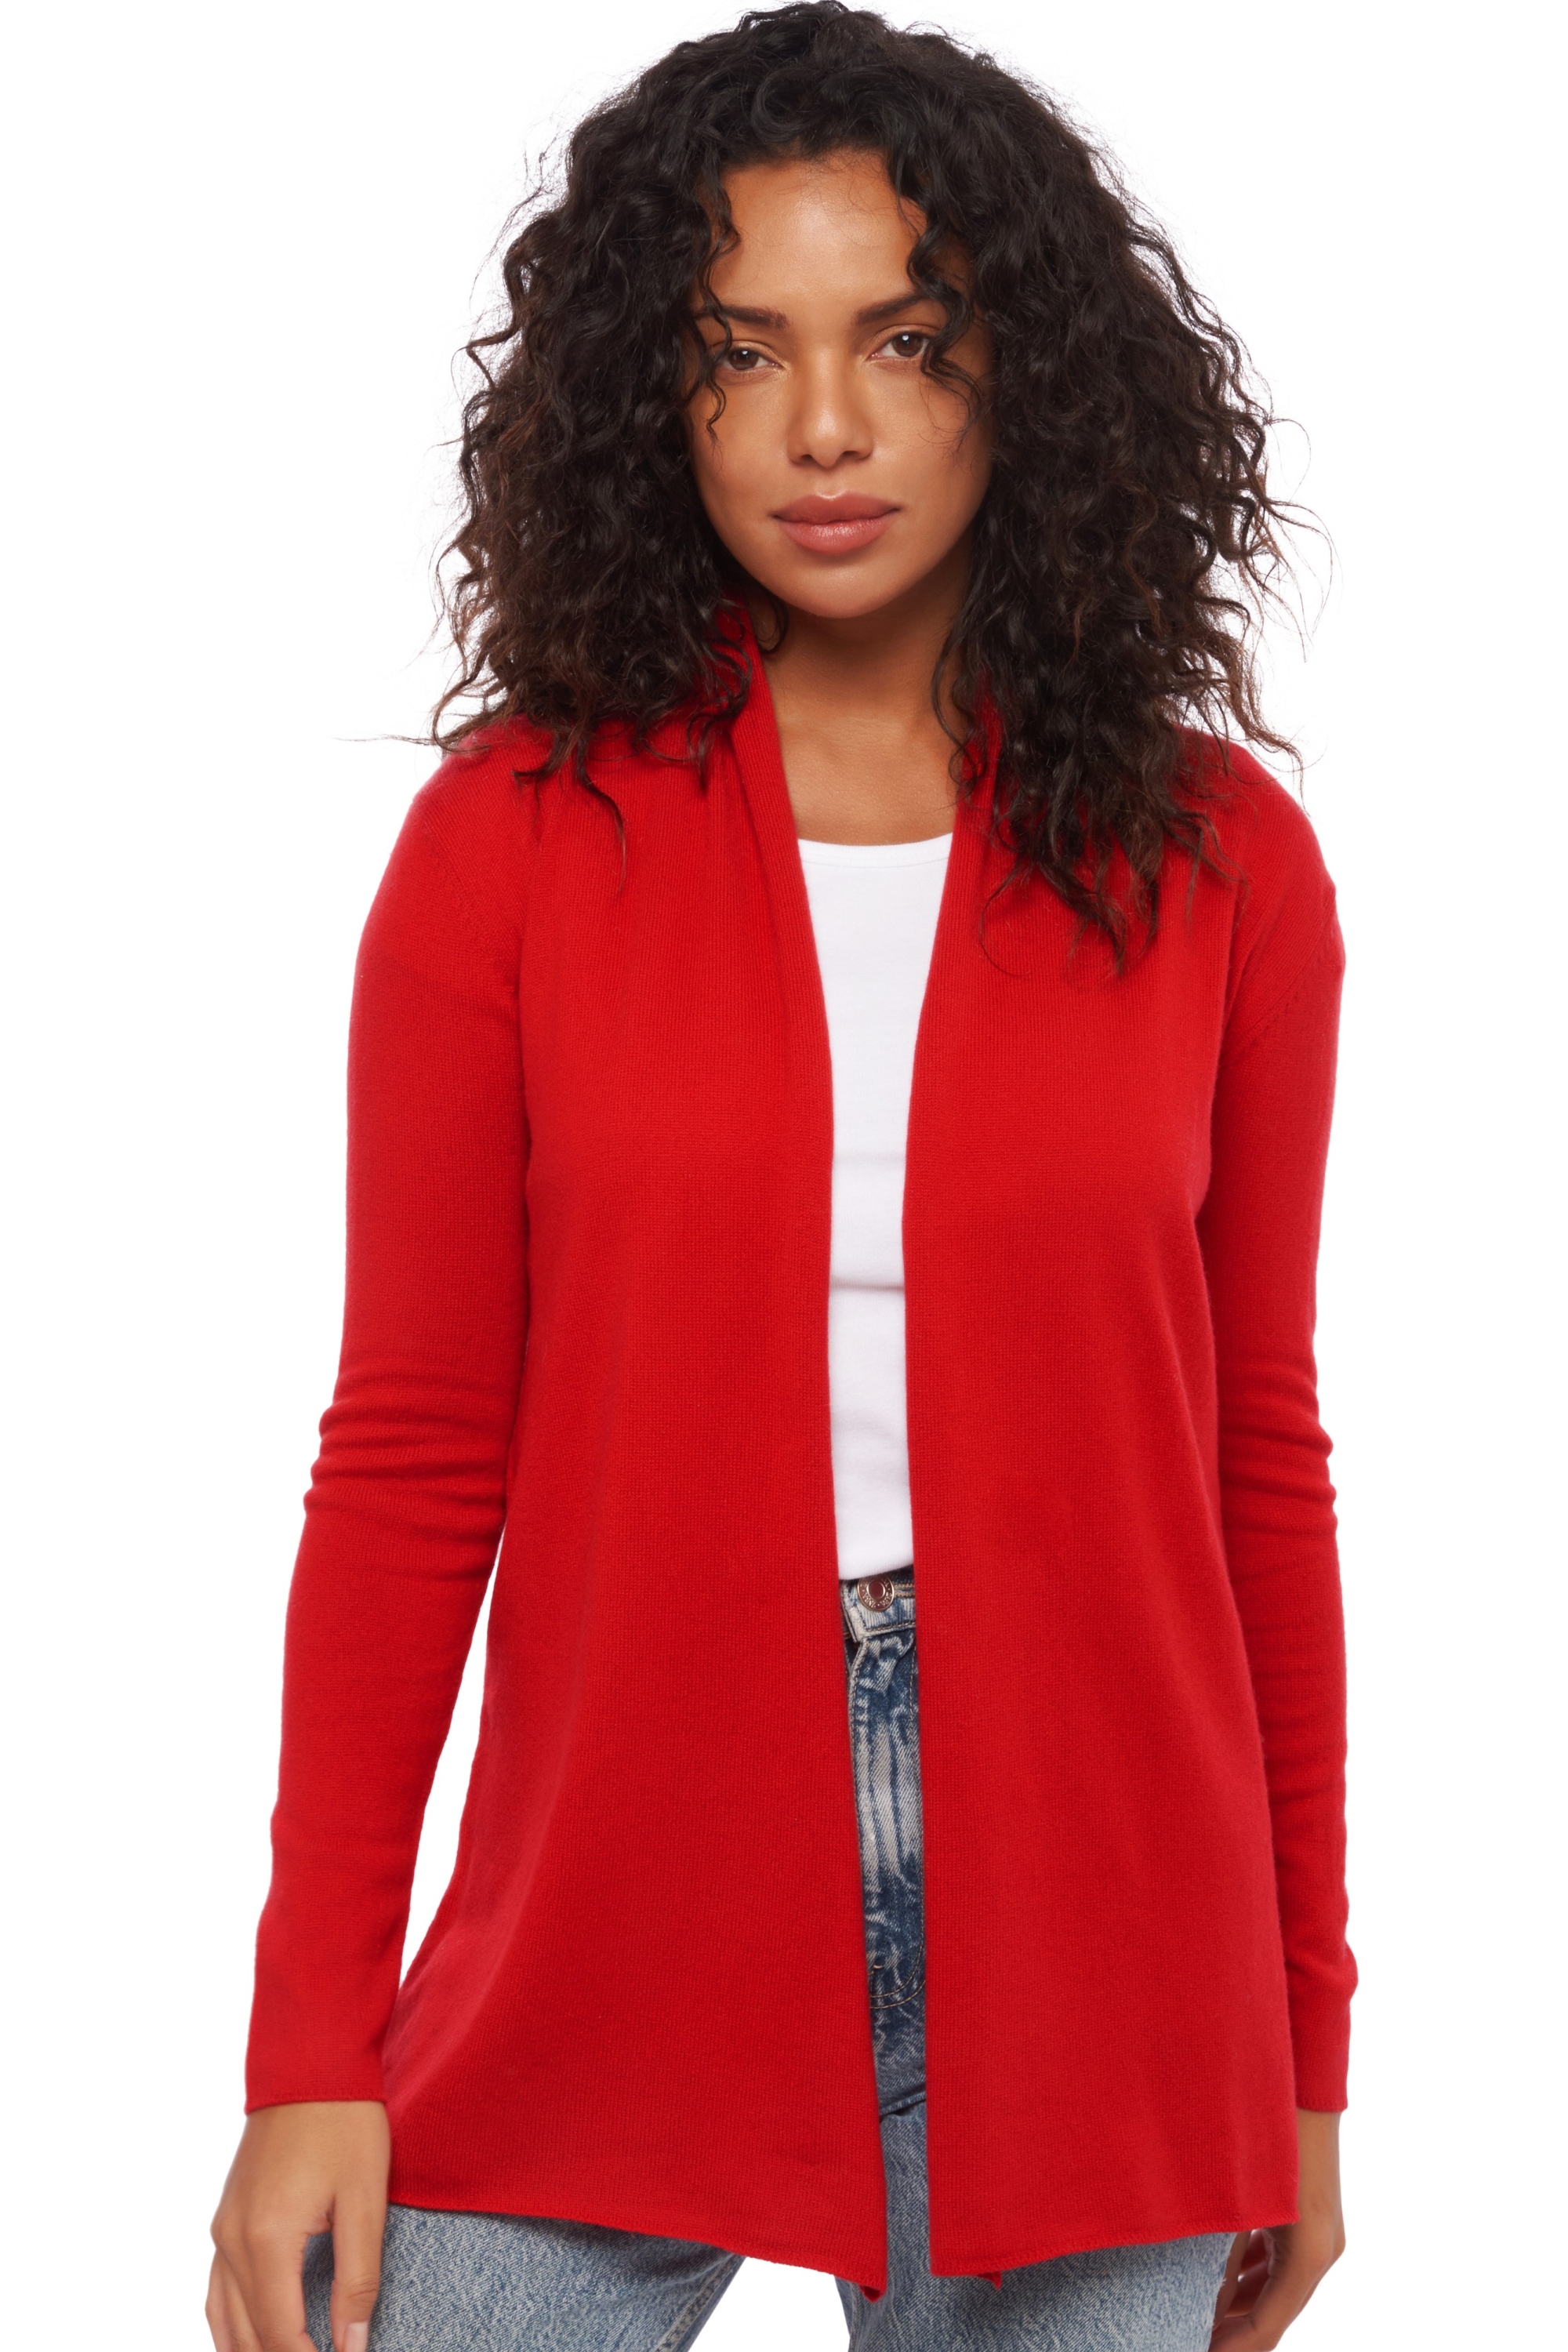 Cashmere cashmere donna cappotti pucci rosso rubino s